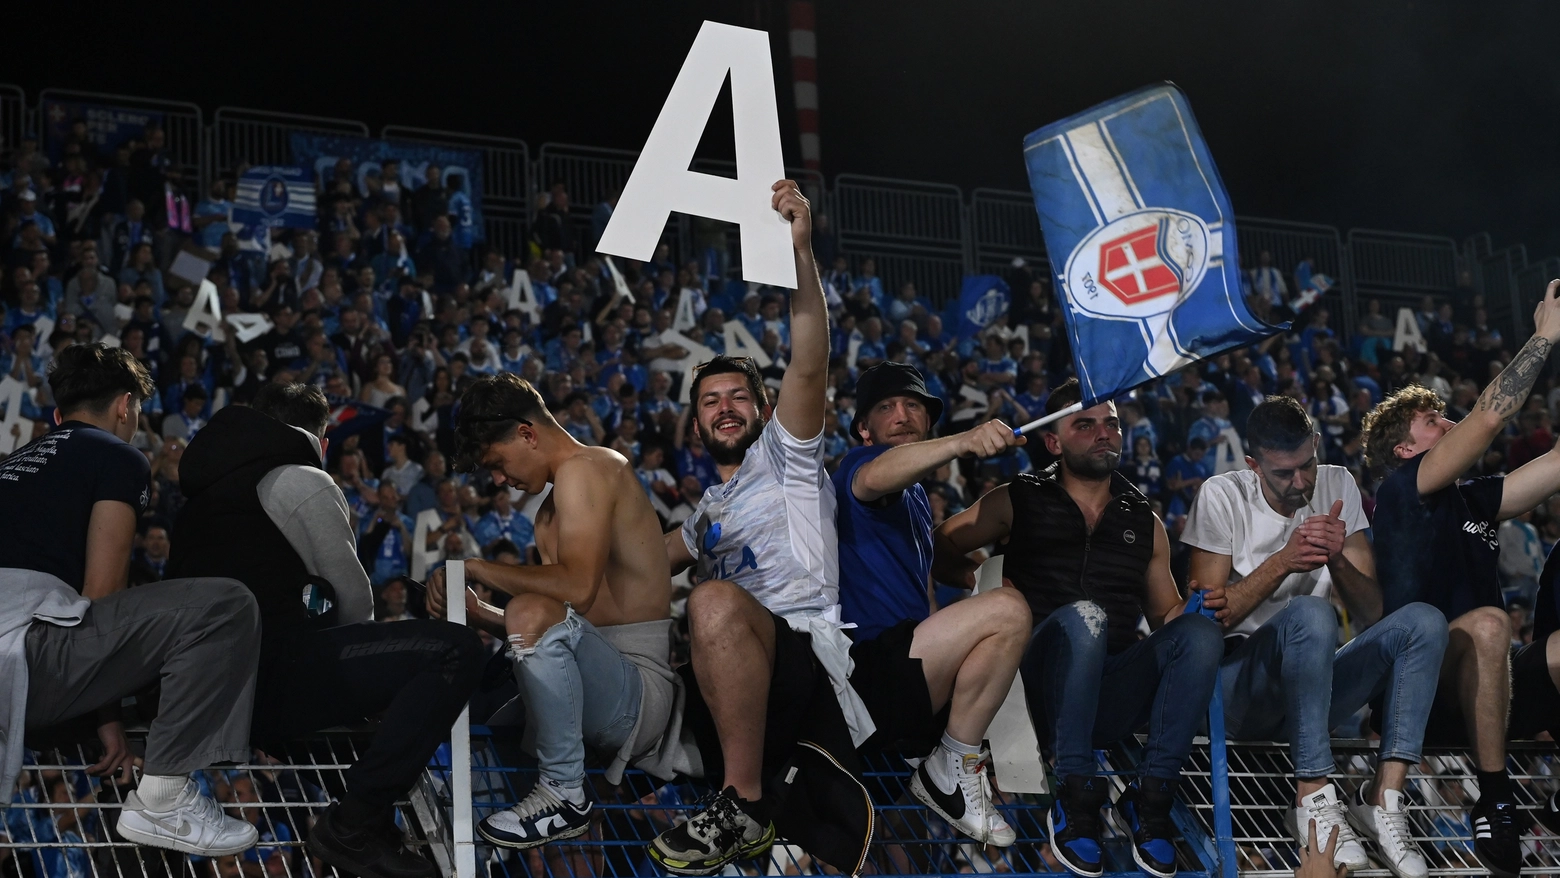 L’obiettivo rivelato dal direttore sportivo Carloalberto Ludi, che scarta l’ipotesi di un “esilio” a Parma. La capienza attuale – 7.500 spettatori – deve essere aumentata almeno a 10.000